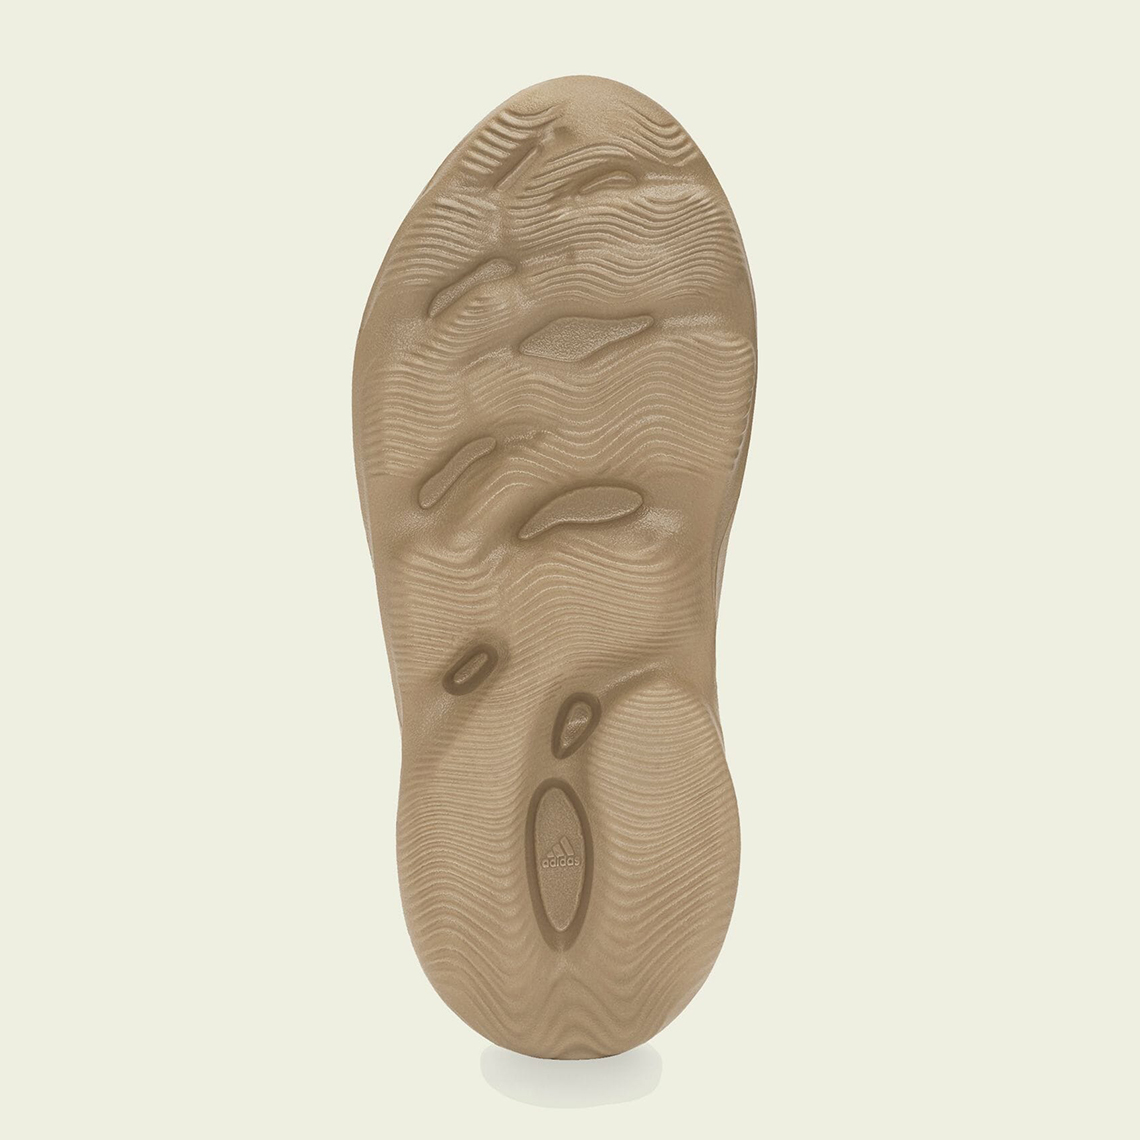 adidas yeezy foam runner yellow ochre GW3354 release date 1